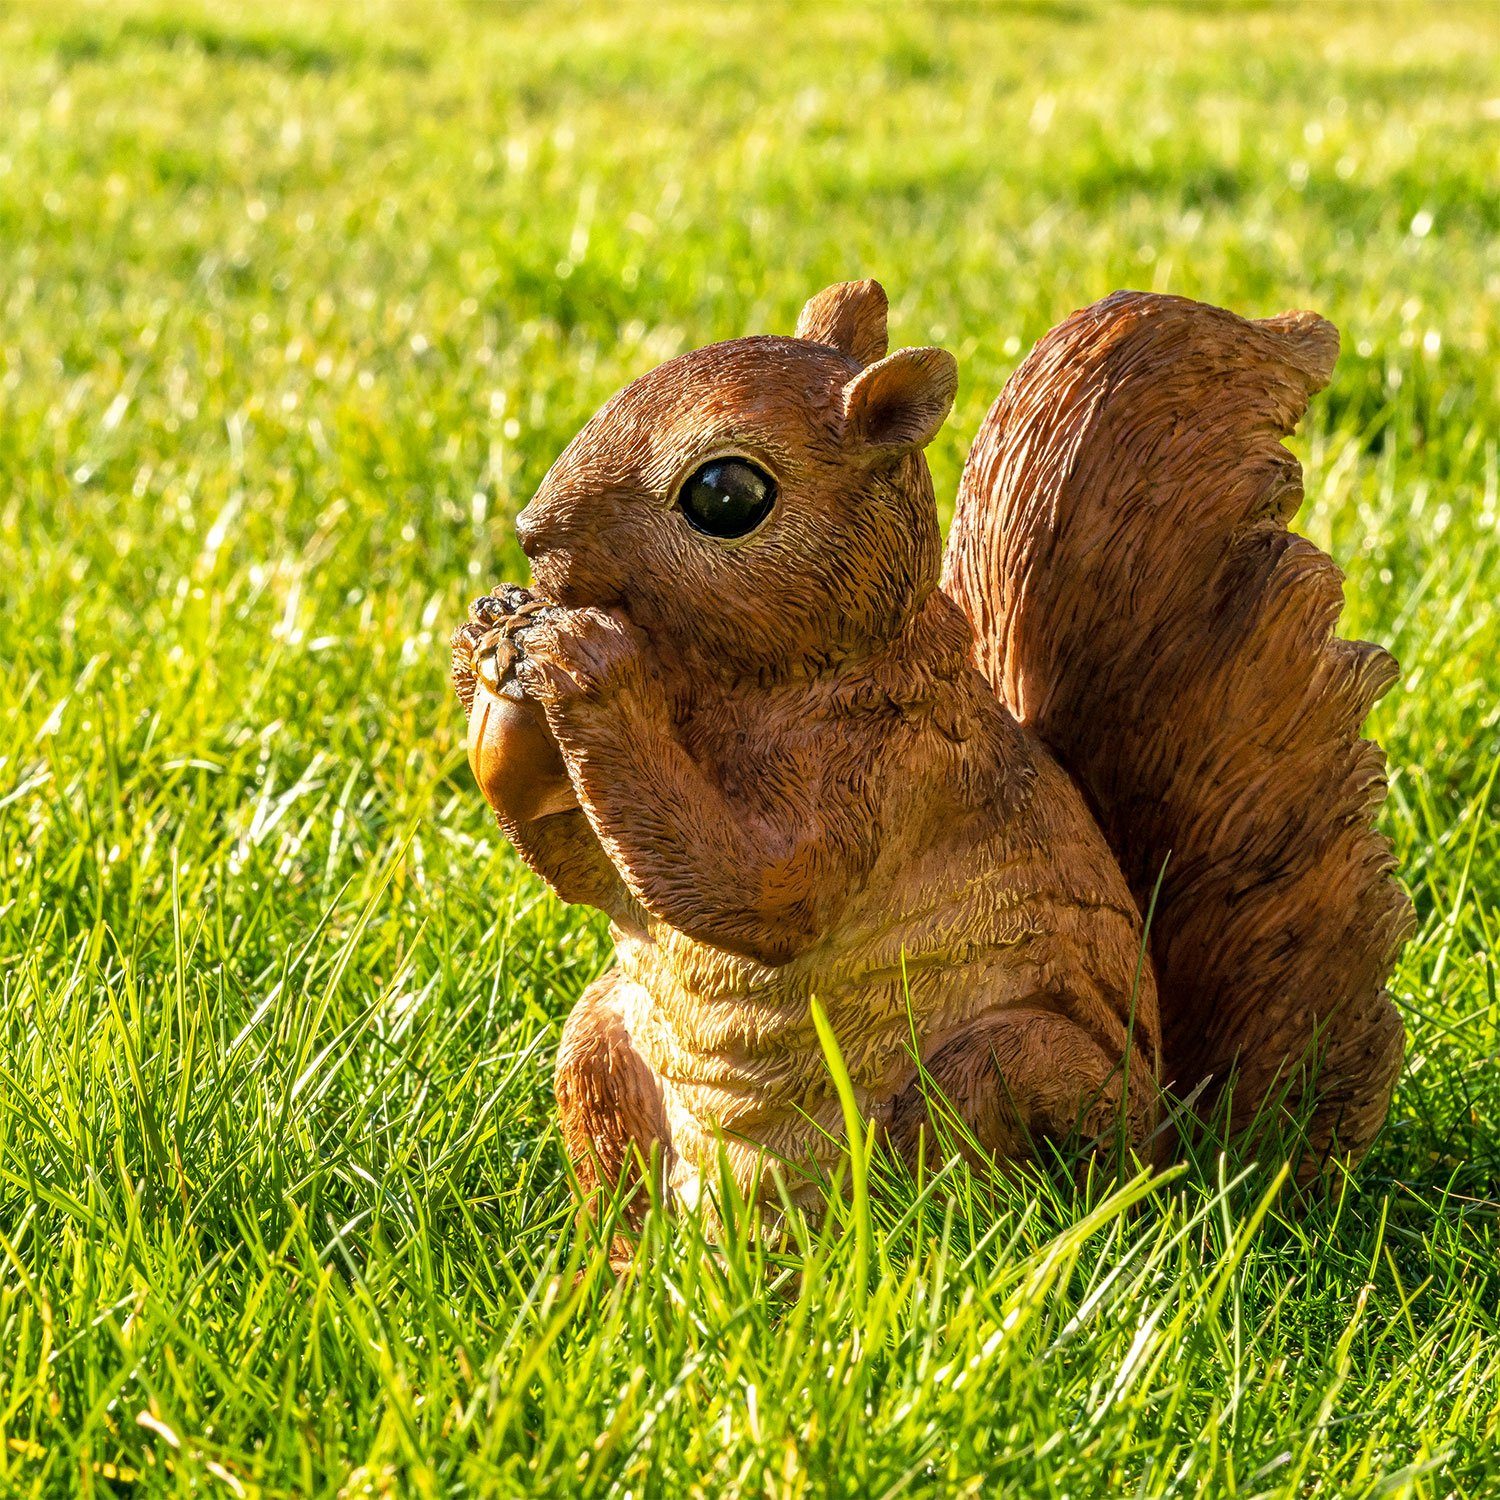 VERDOBA Gartenfigur Eichhörnchen Figur mit Gartenfigur - Deko Nuss wetterfeste Gartendeko